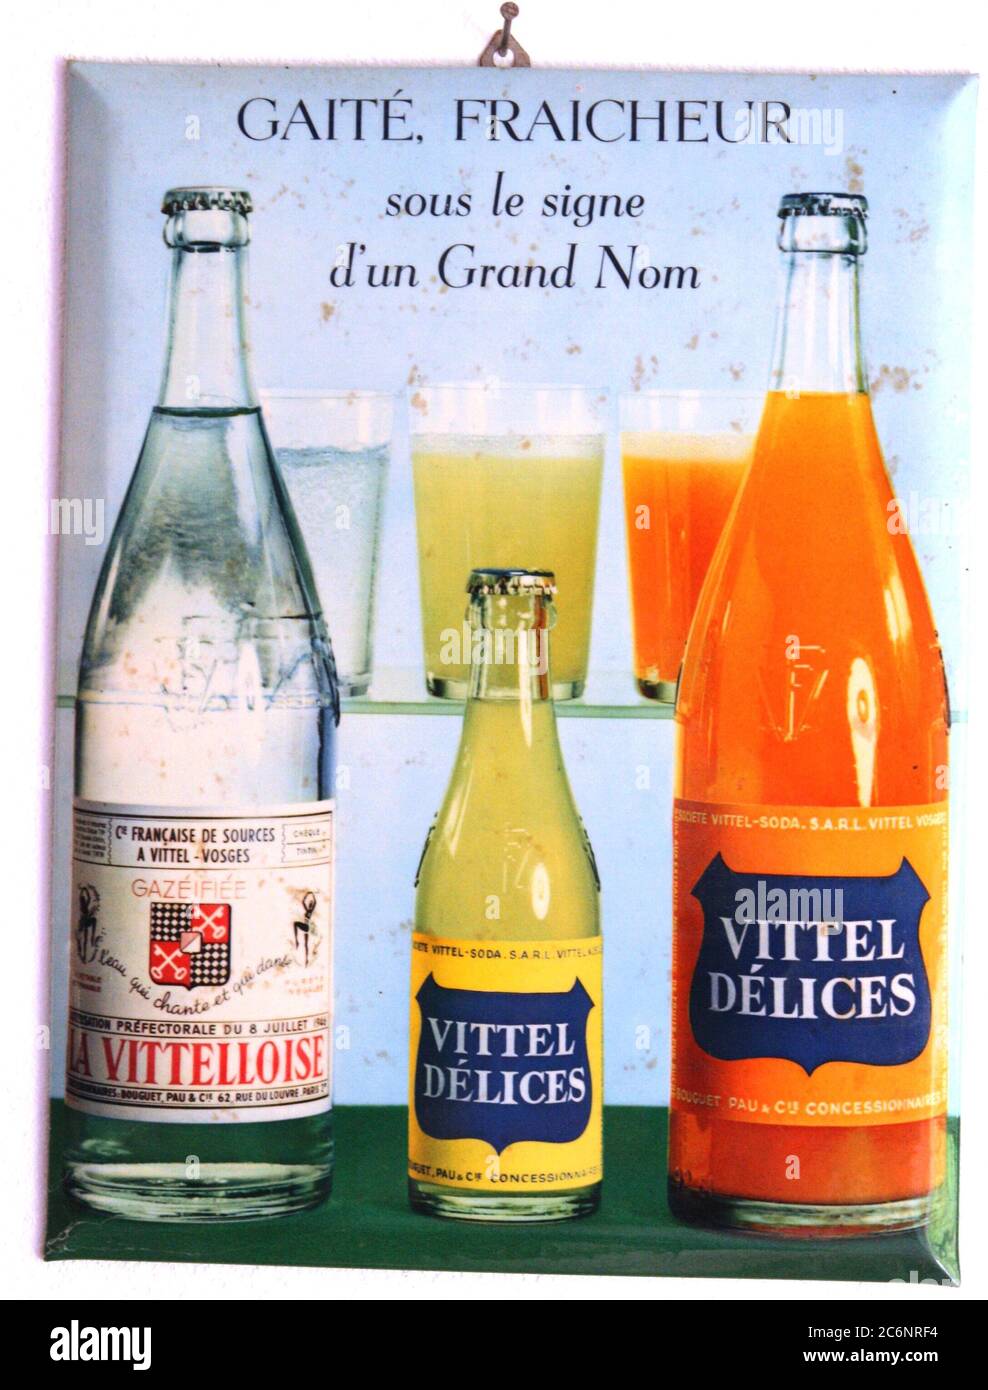 Glacoide Vittel Delices Vitteloise vers 1960 Foto Stock